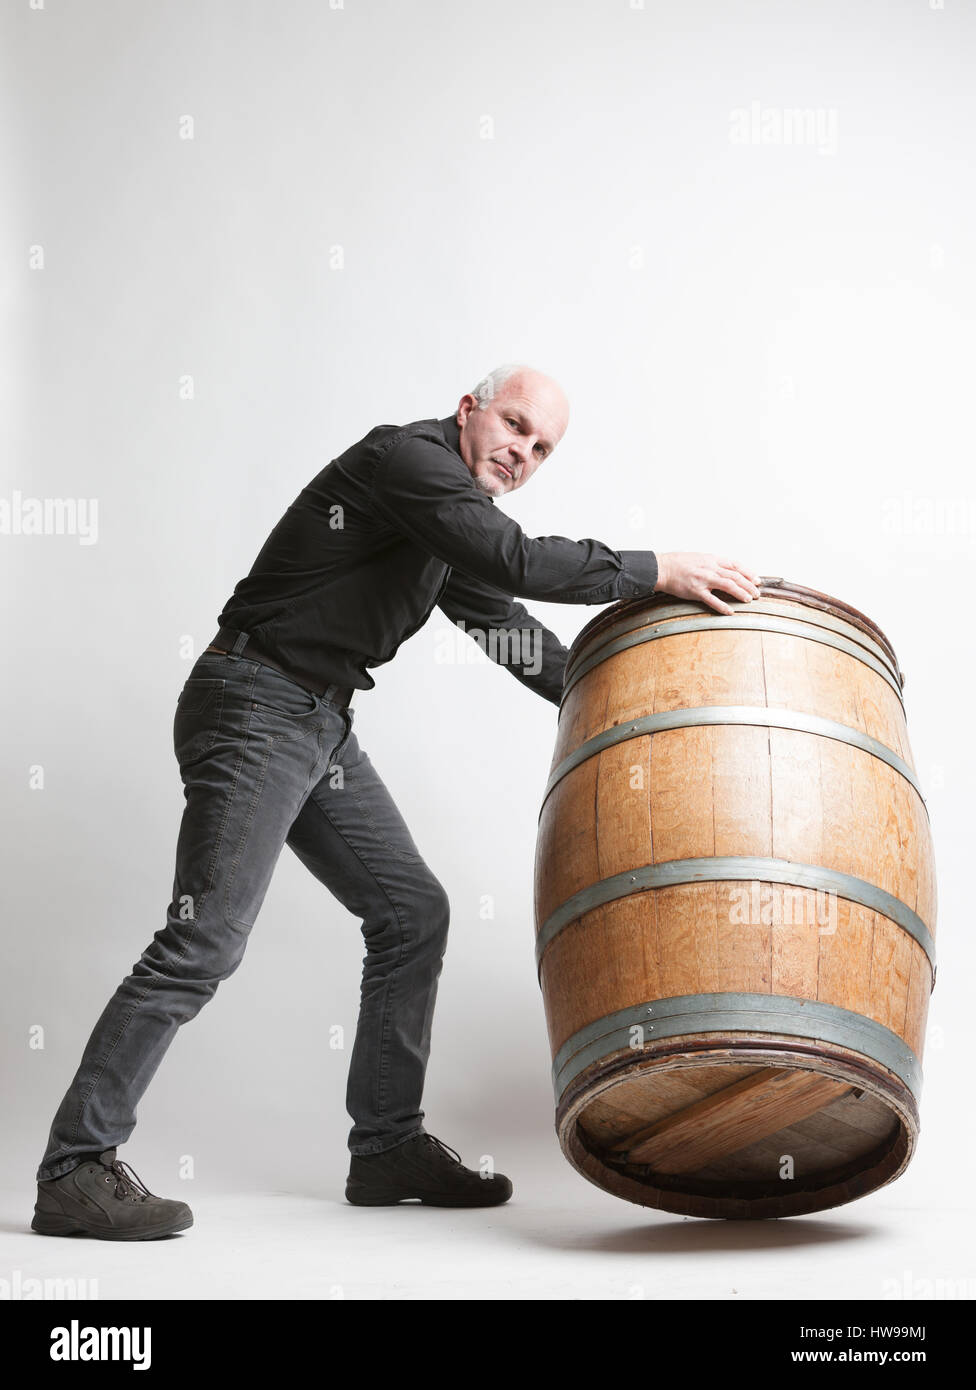 Déplacement d'un homme grand chêne vin ou bière baril en la roulant autour de sa circonférence de base de l'appareil photo avec un air sérieux dans un vitic Banque D'Images